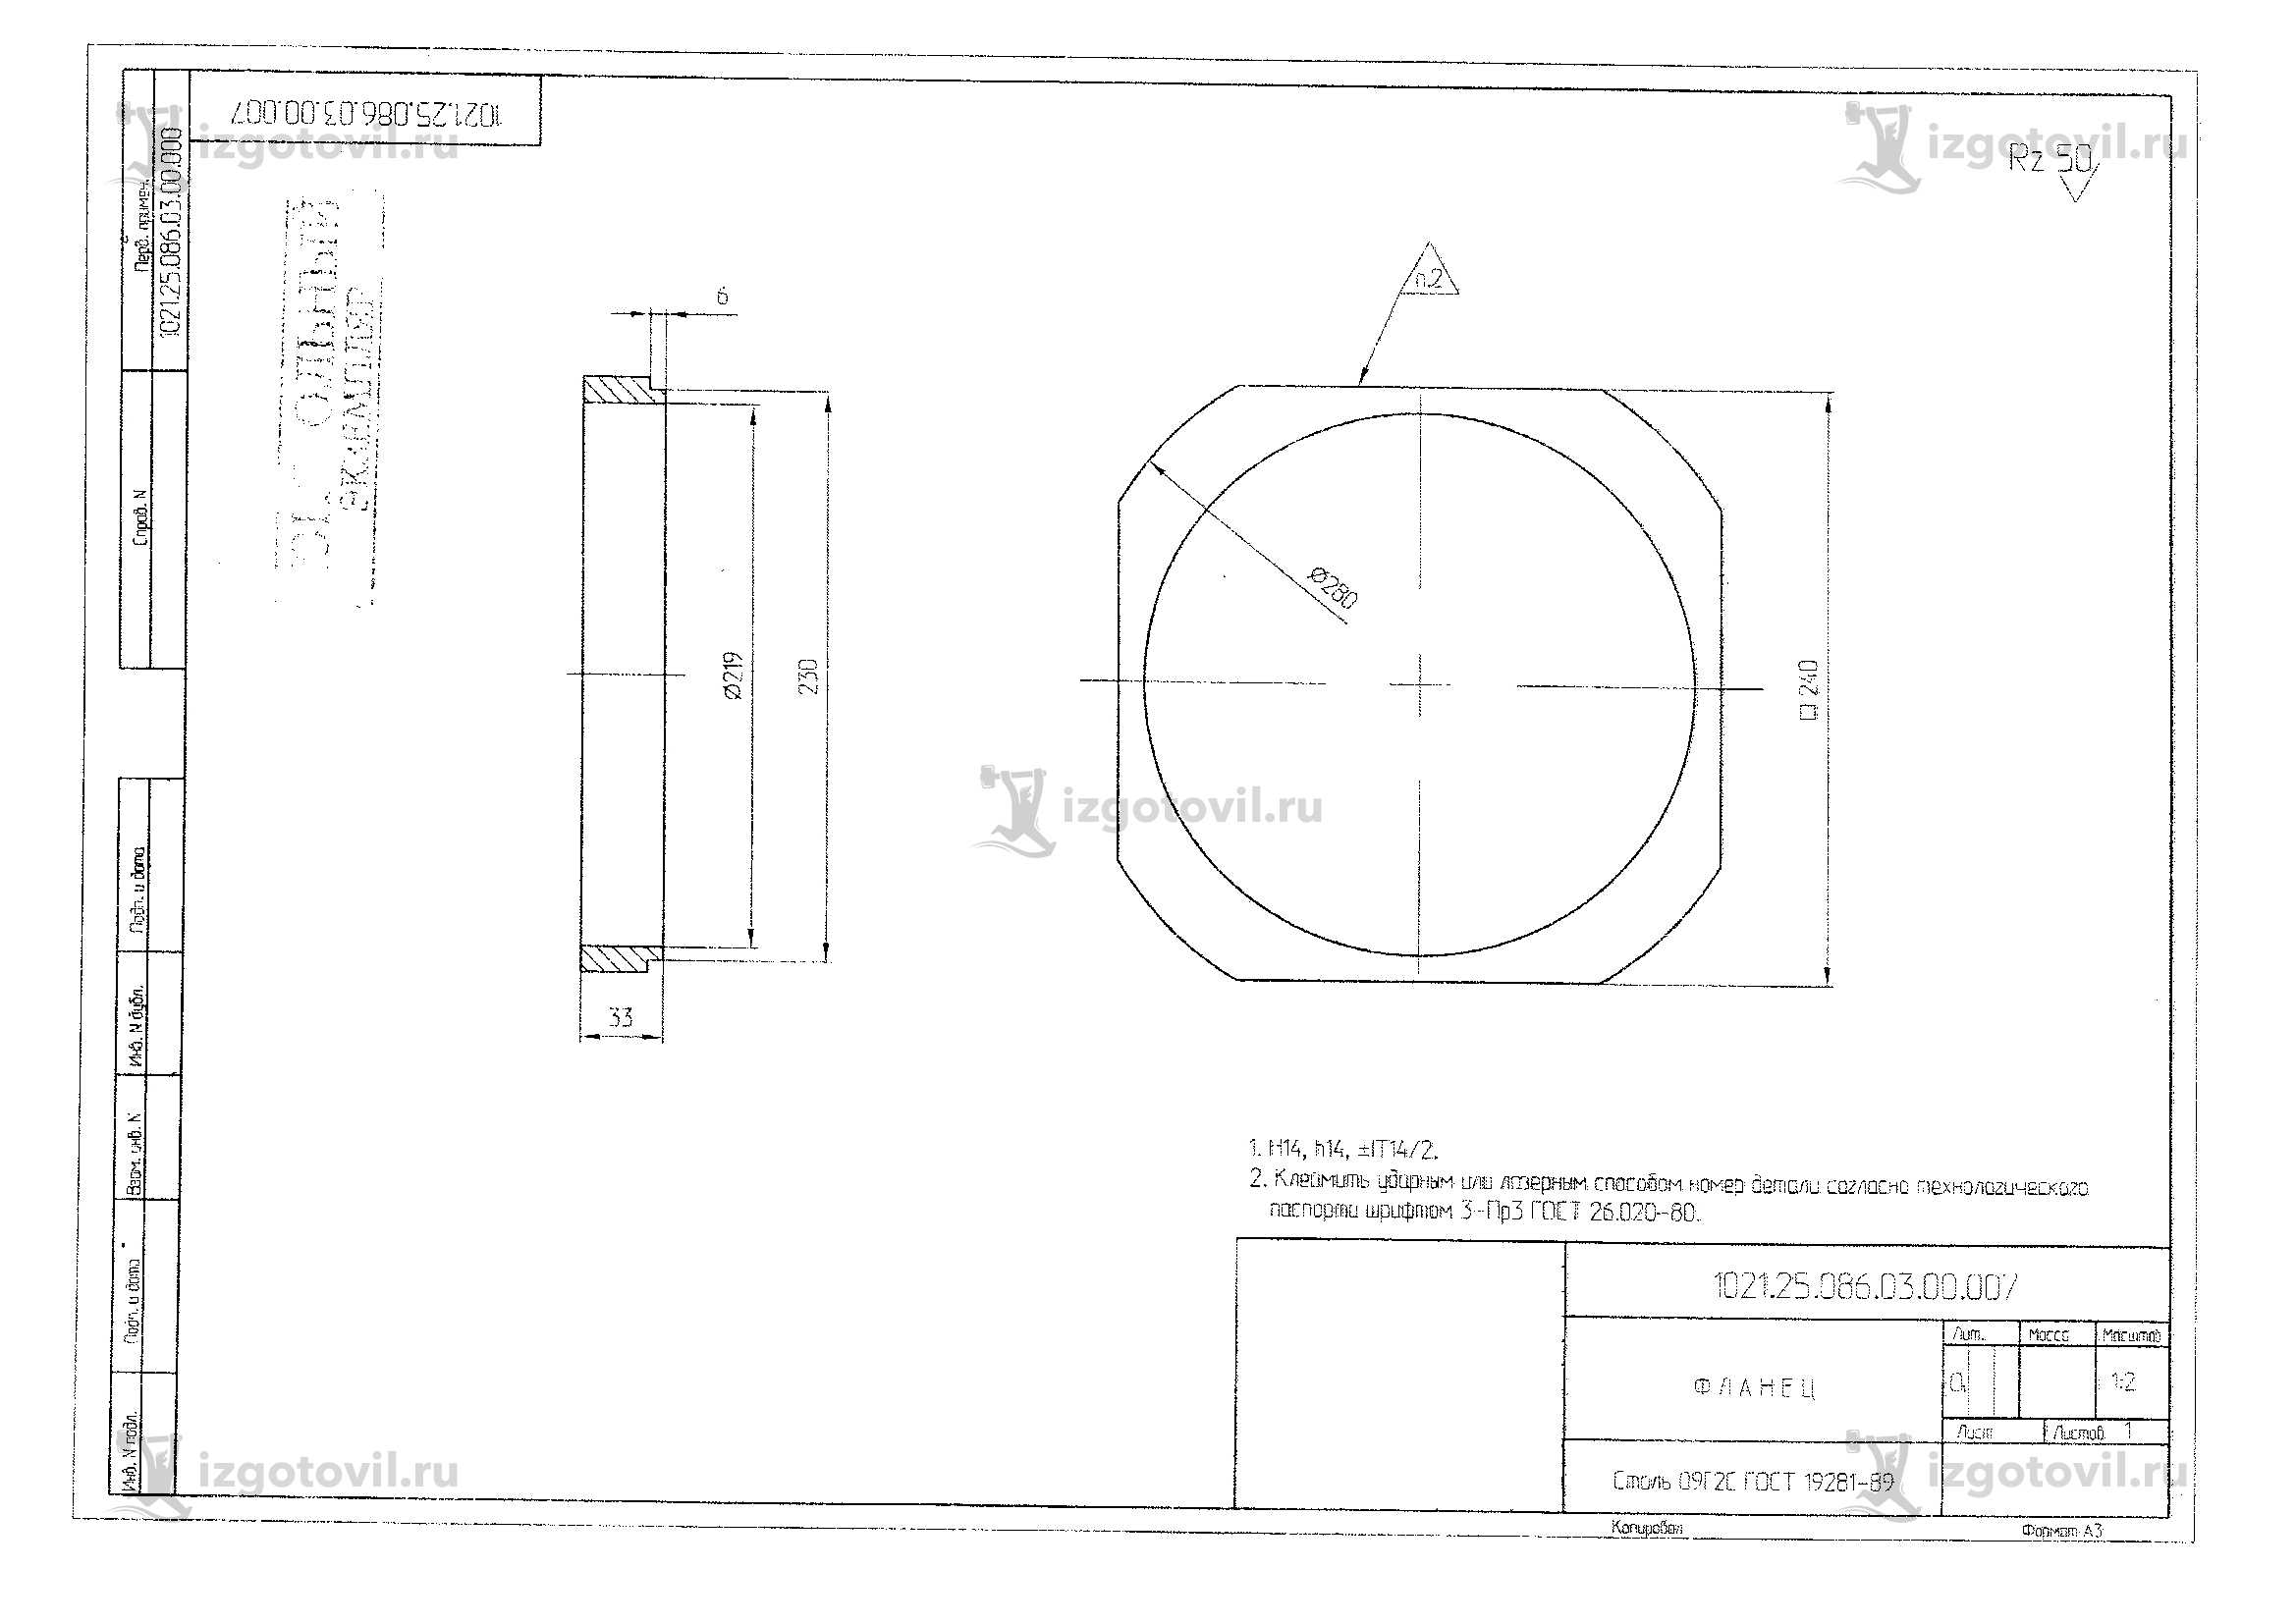 Изготовление деталей по чертежам: корпуса, фланец и блок резьбовой